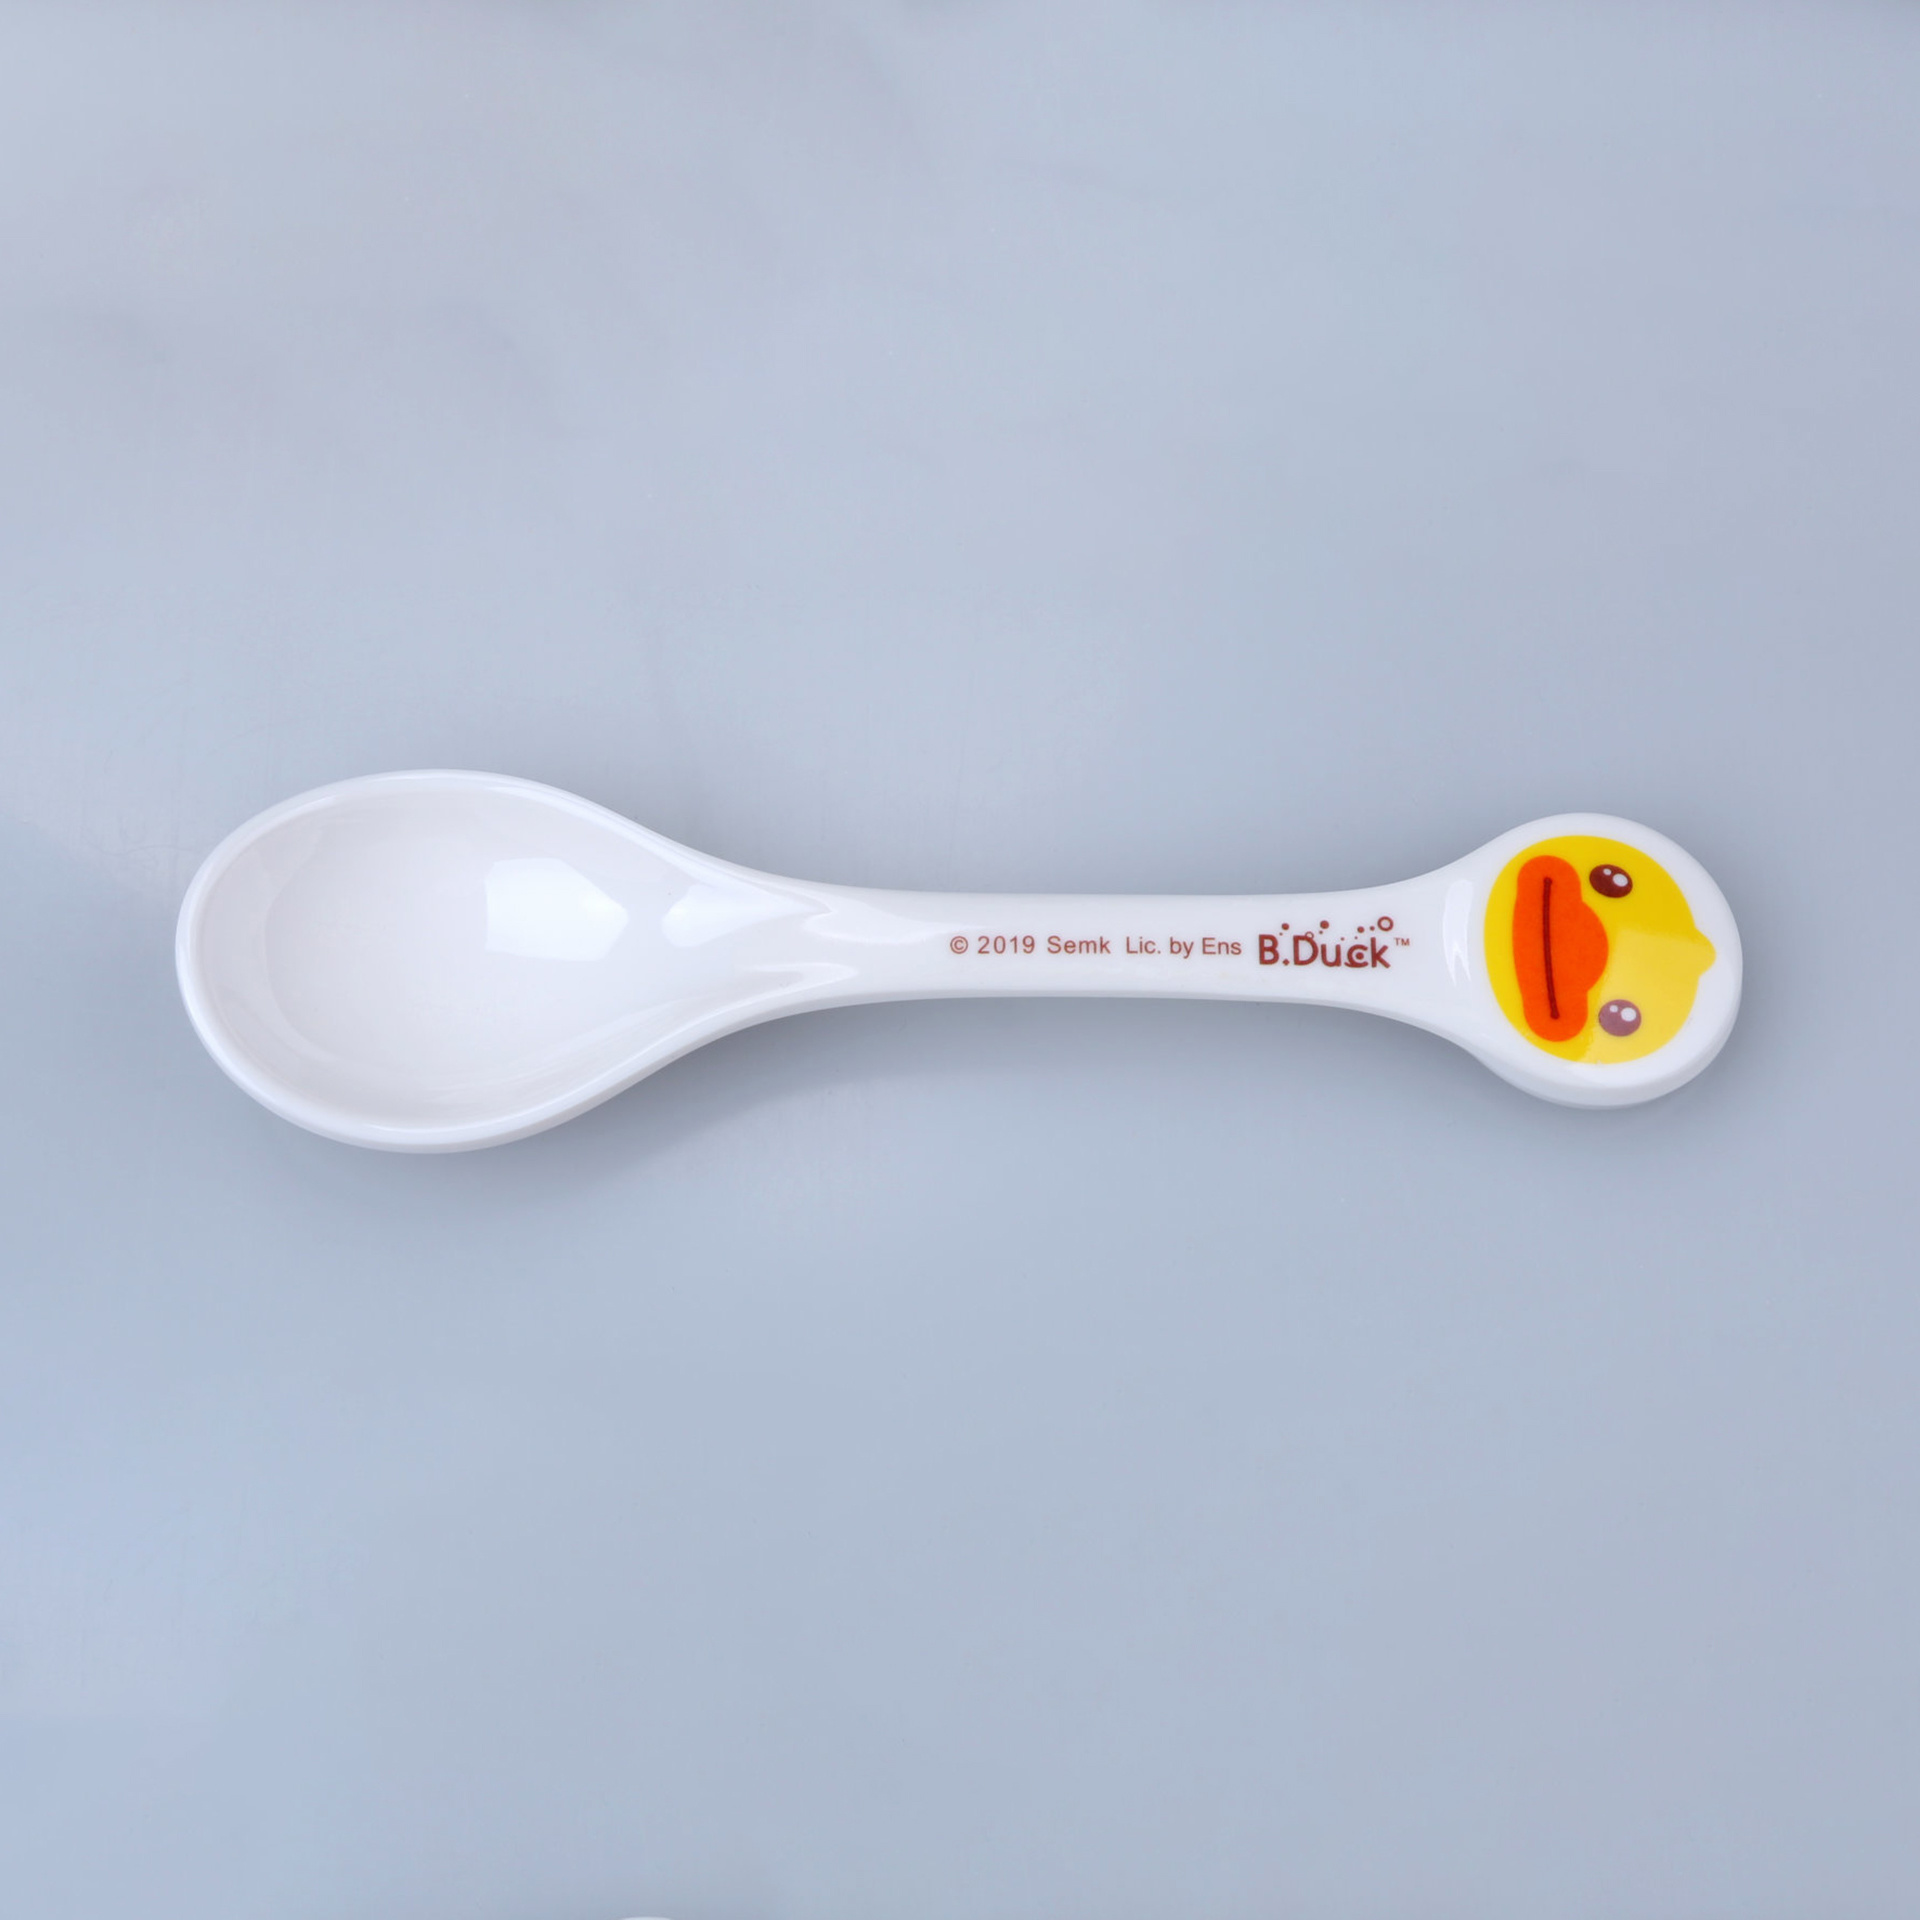 B.Duck little yellow duck spoon